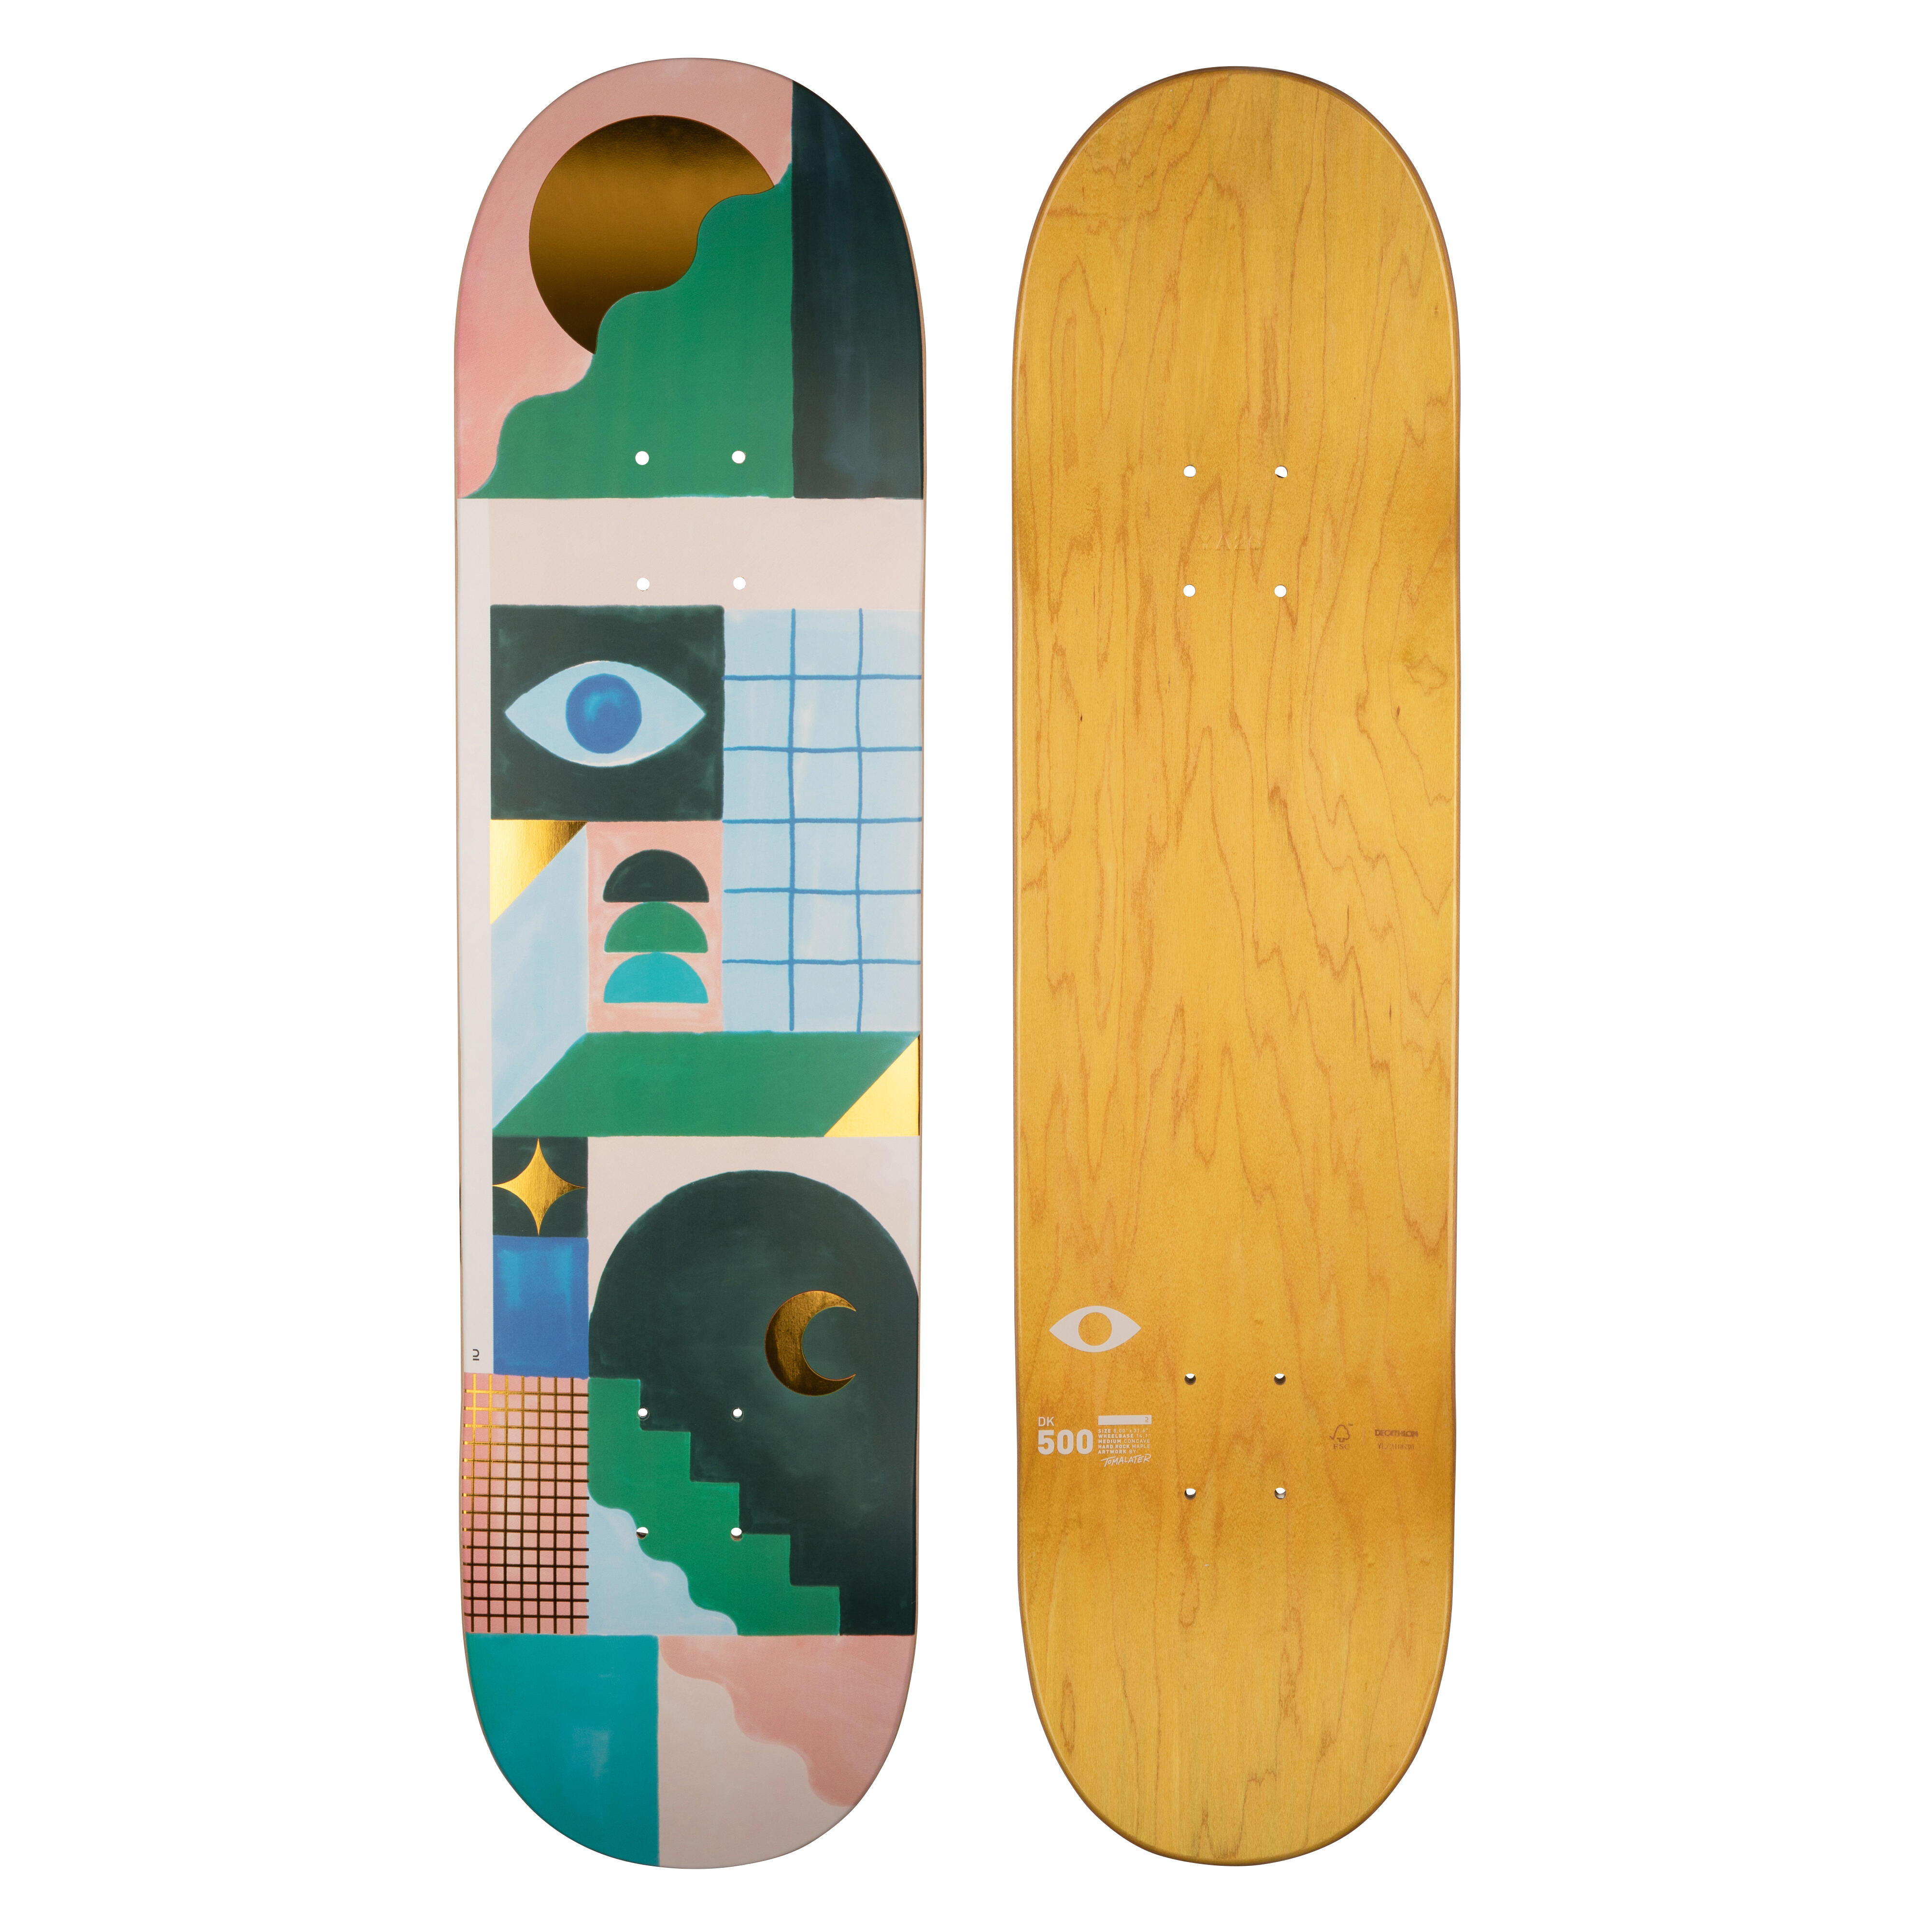 Placă skateboard DK500 Mărimea 8″Grafică de @TOMALATER decathlon.ro  Placi si piese de schimb skateboard